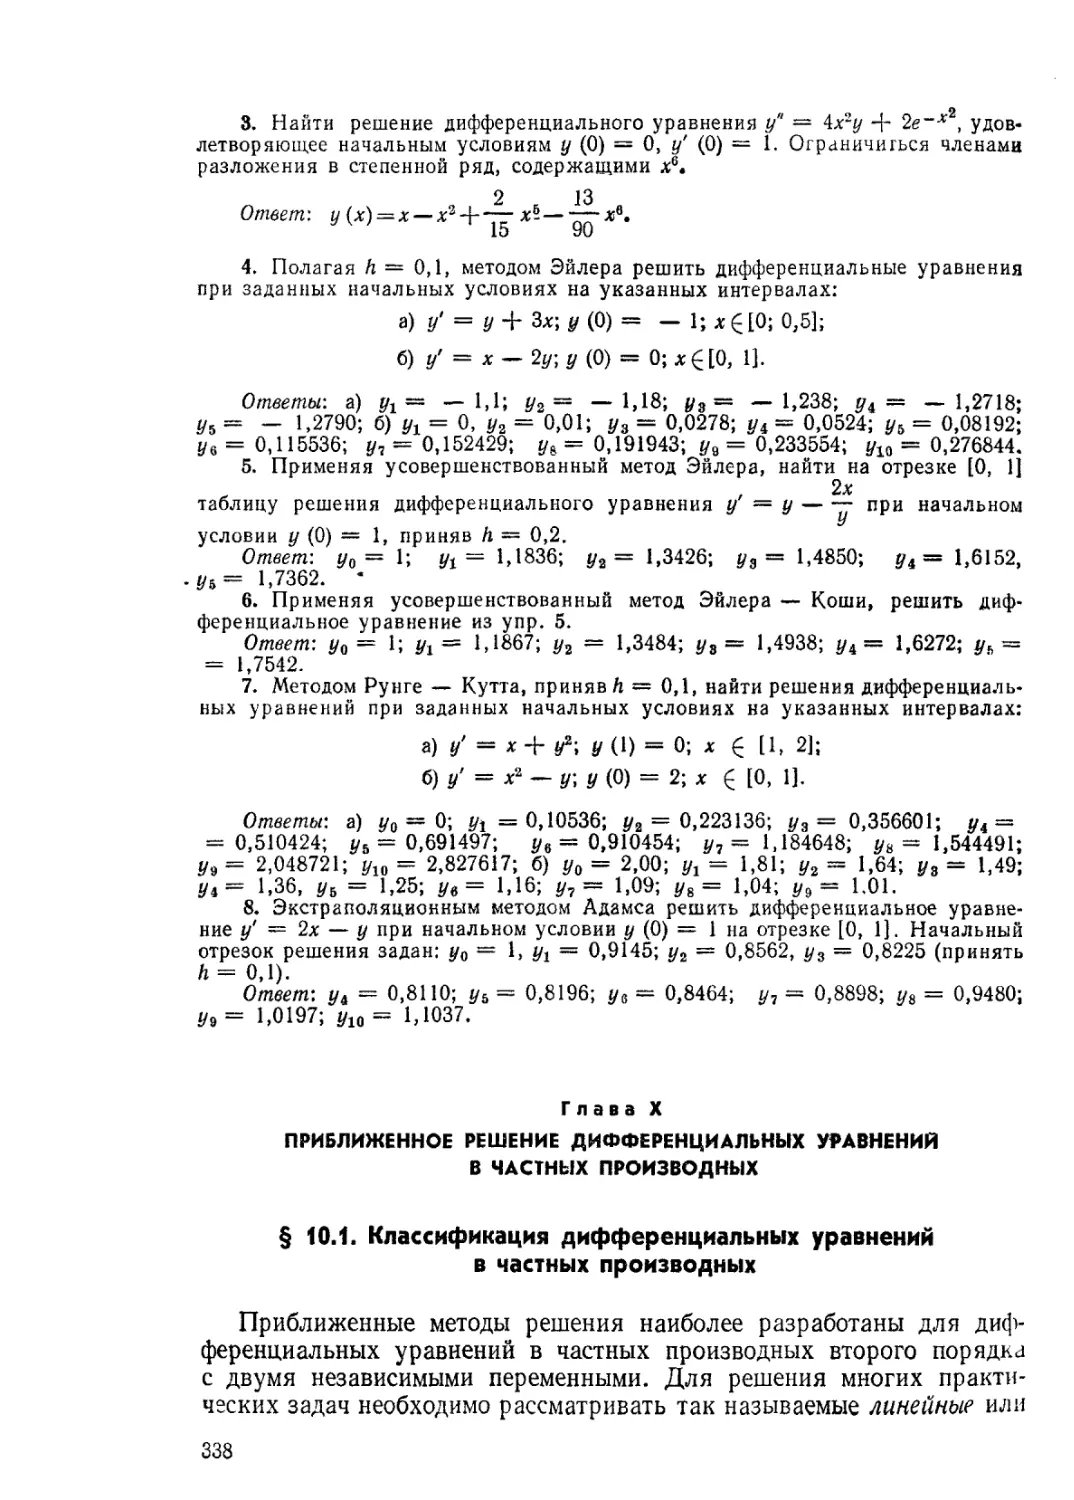 ГЛАВА X. ПРИБЛИЖЕННОЕ РЕШЕНИЕ ДИФФЕРЕНЦИАЛЬНЫХ УРАВНЕНИЙ В ЧАСТНЫХ ПРОИЗВОДНЫХ
§ 10.1 Классификация дифференциальных уравнений в частных производных